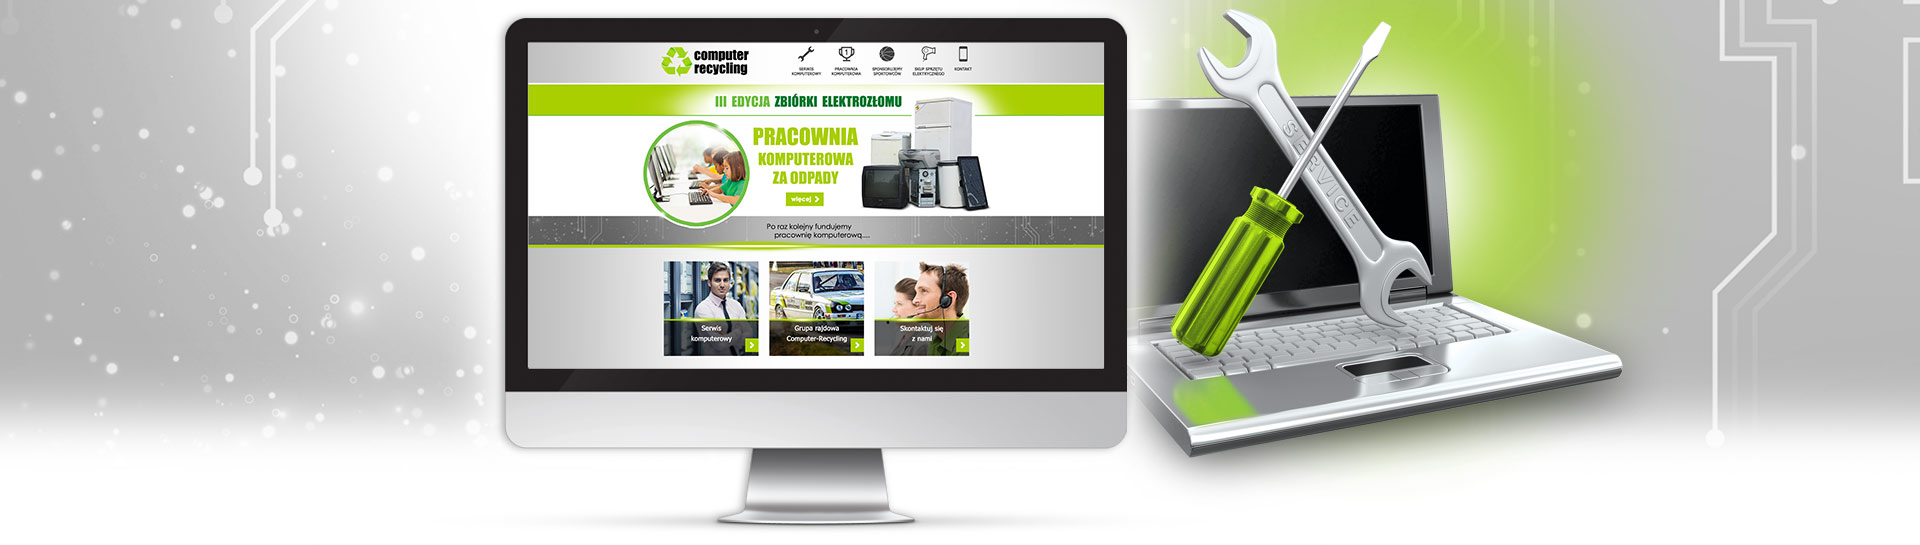  Strona WWW dla firmy Computer-recycling - Agencja Reklamowa ImagoArt.pl